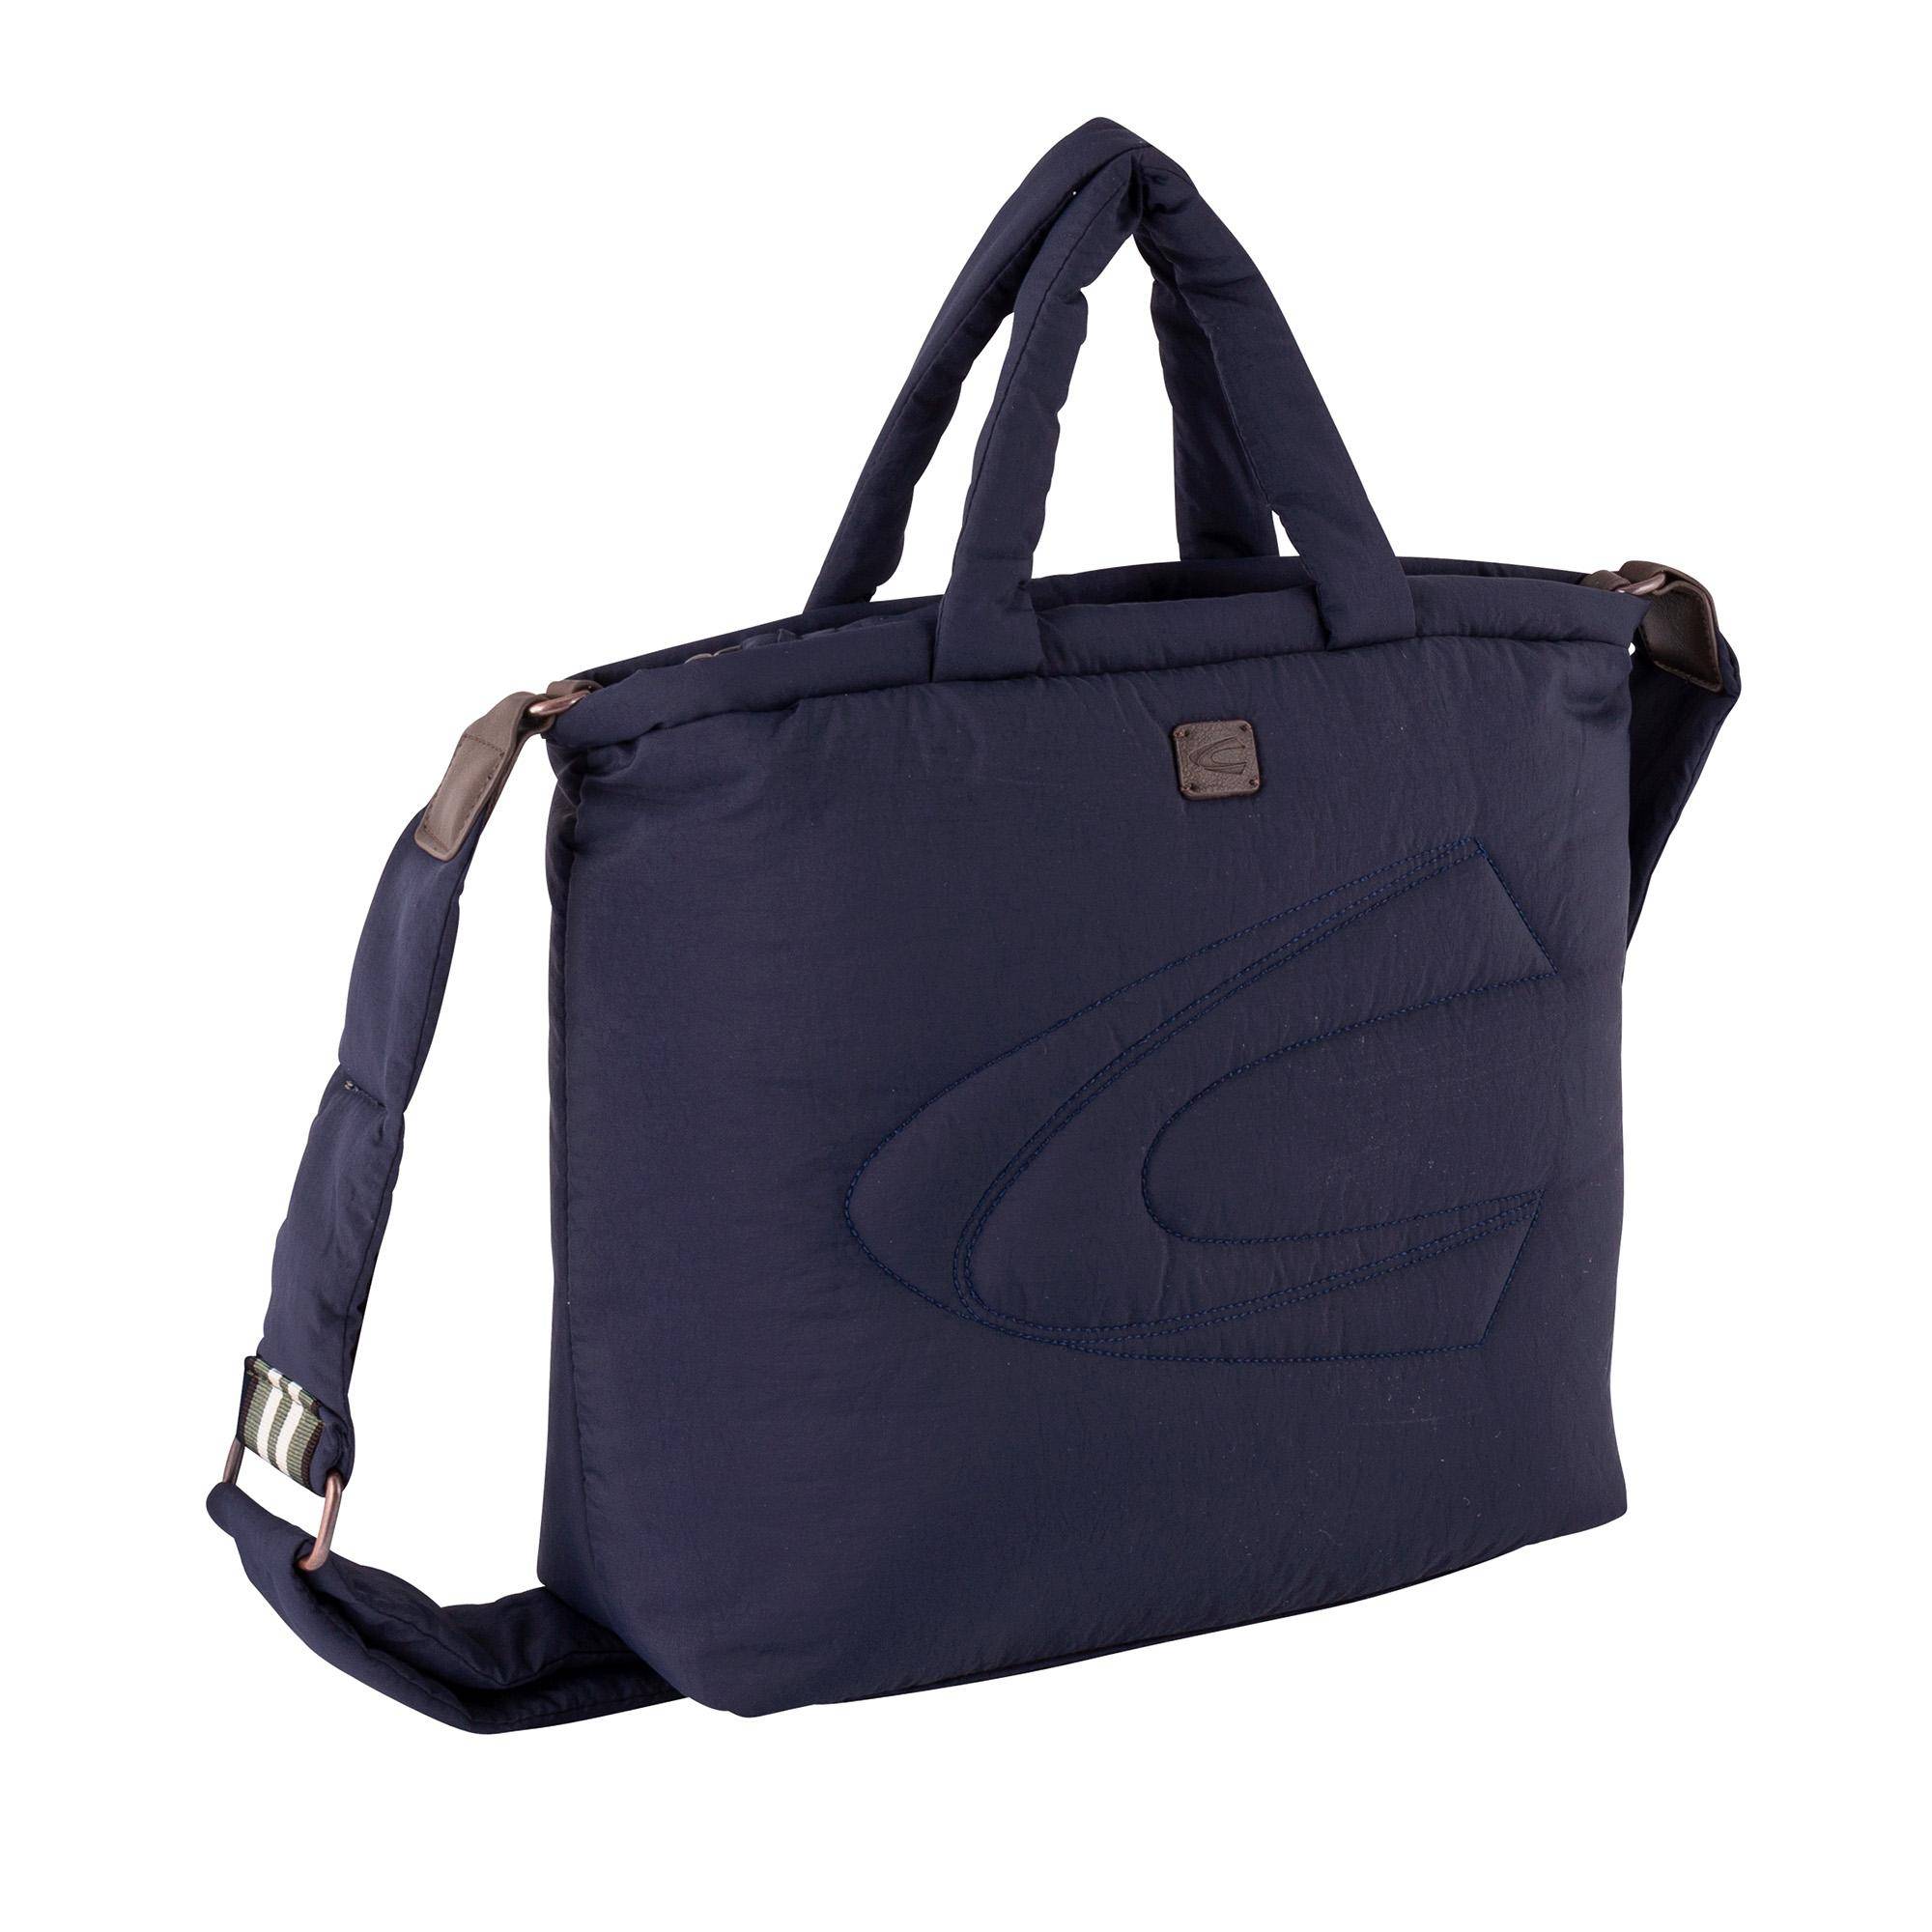 Женская сумка Camel Active, синяя, цвет синий, размер ONE SIZE